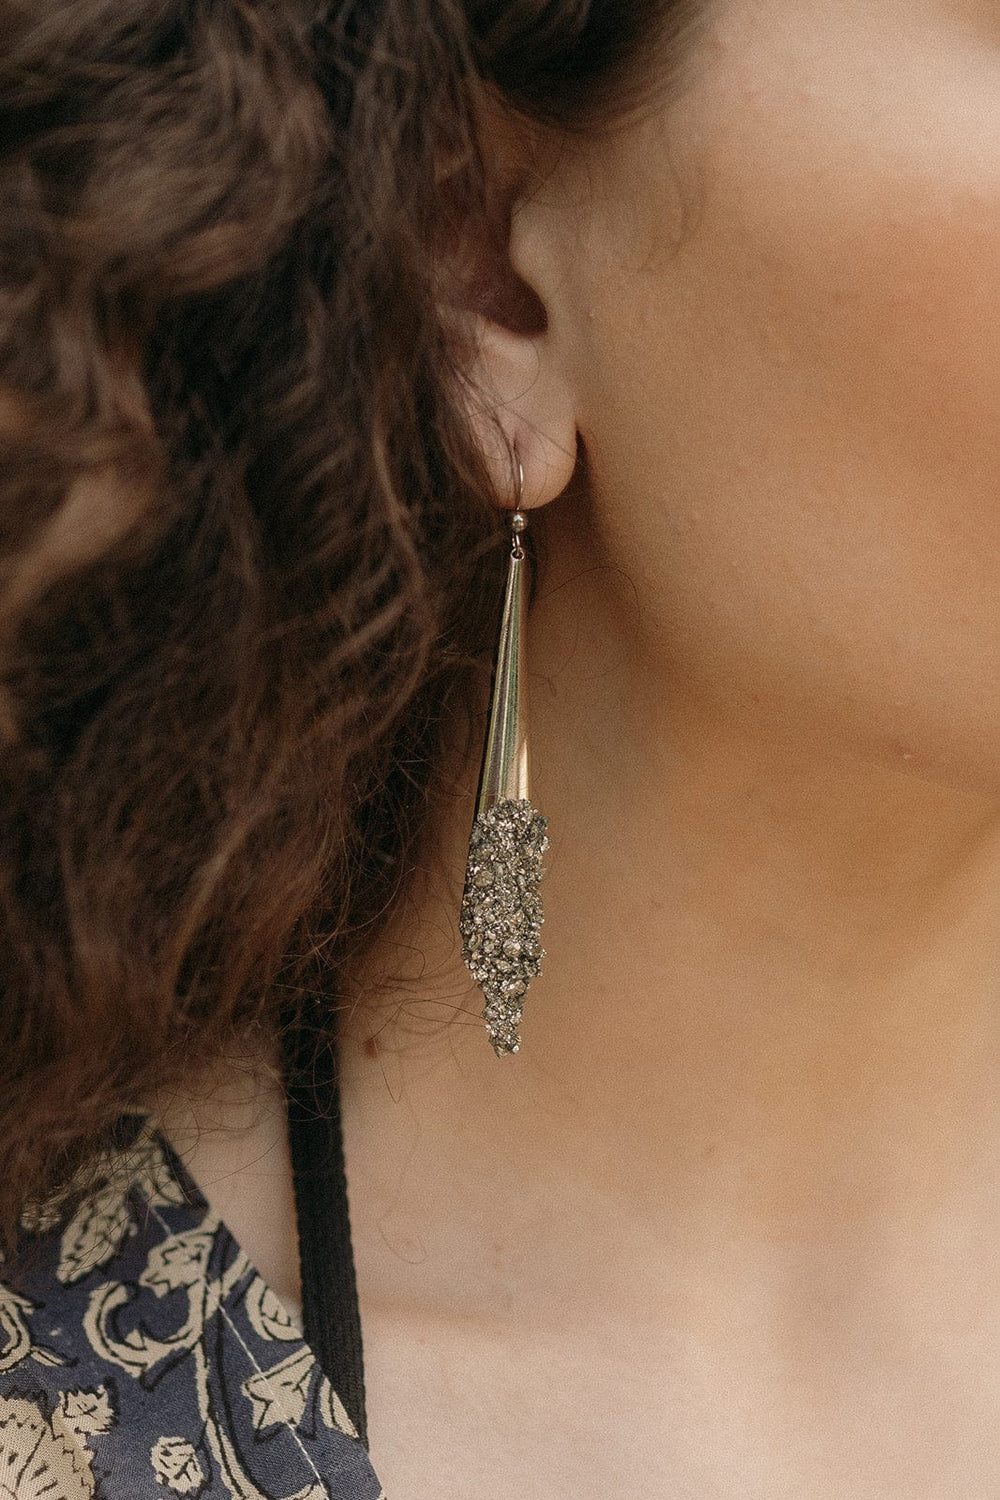 silver druzy earrings